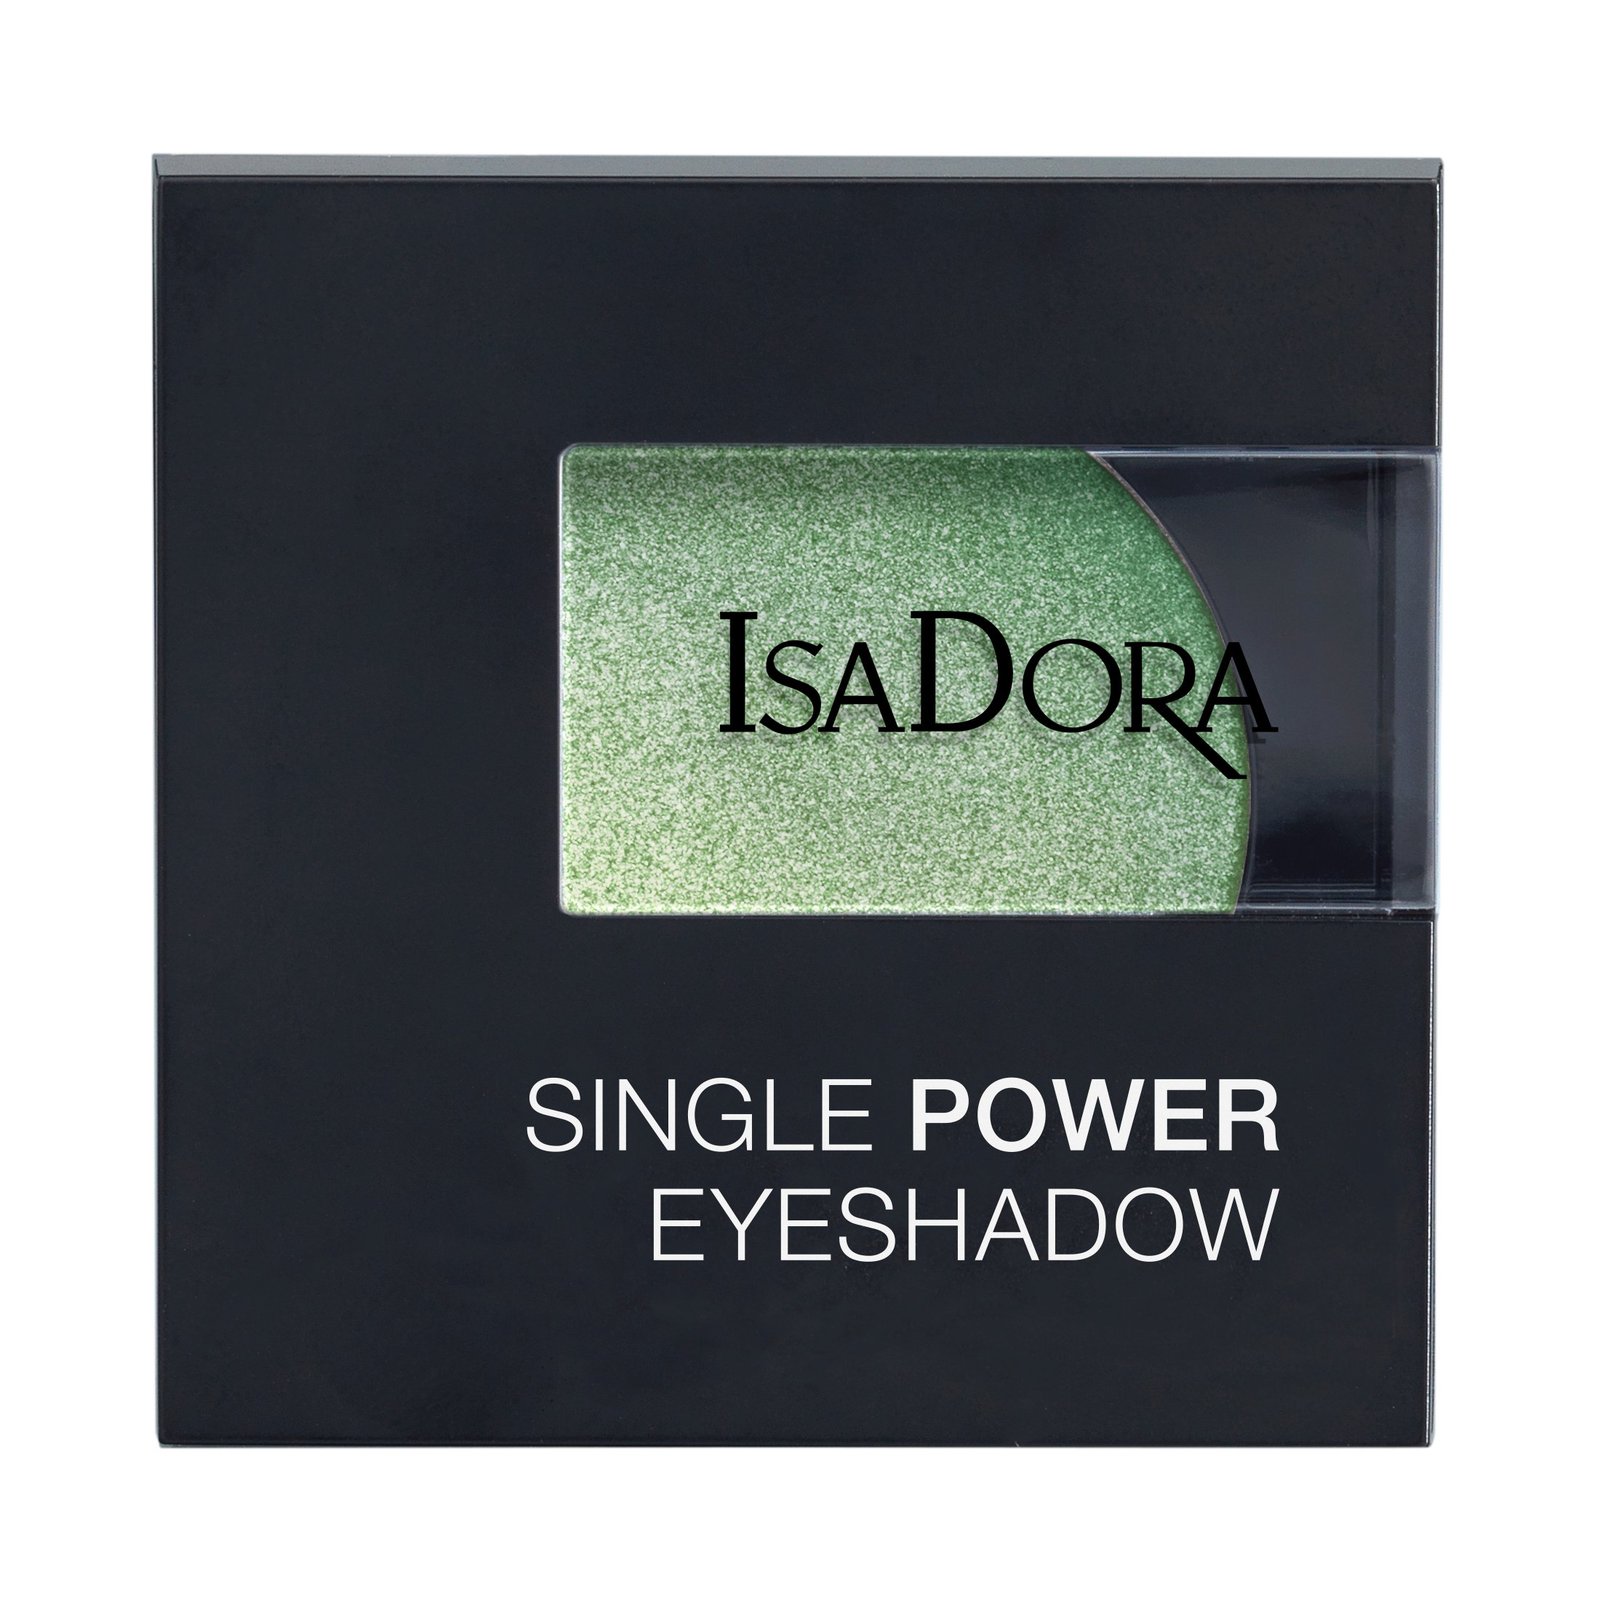 IsaDora Single Power Eyeshadow 19 Jade Green